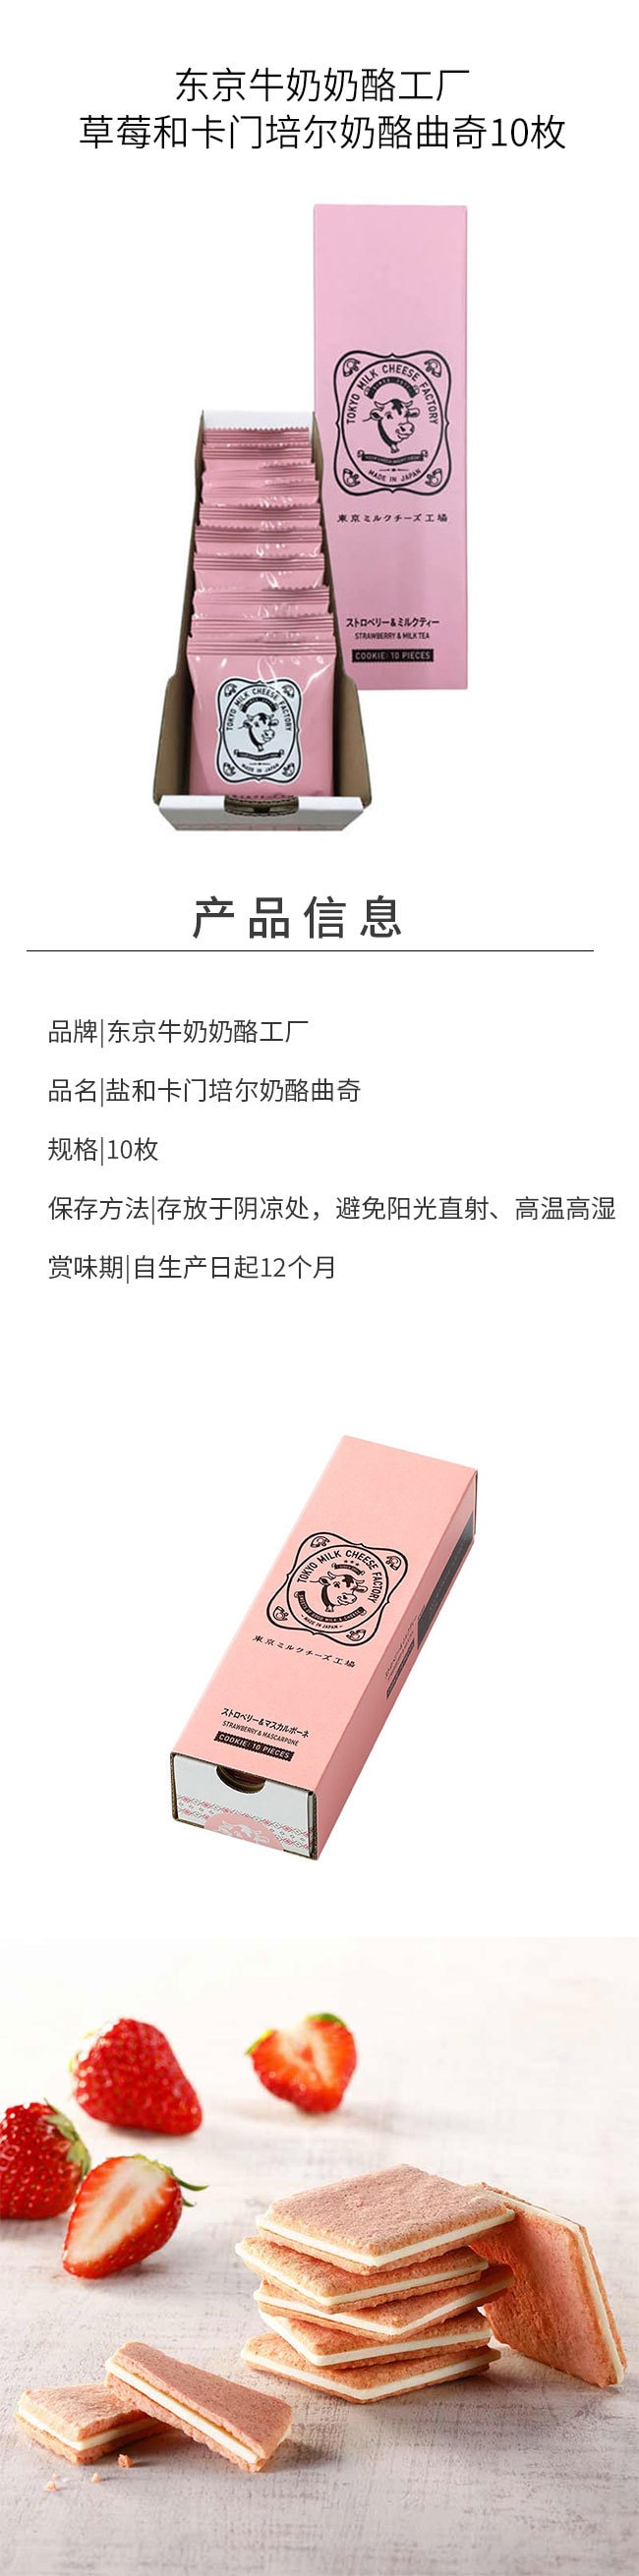 【日本直邮】东京牛奶芝士工厂 草莓芝士饼干 10枚装